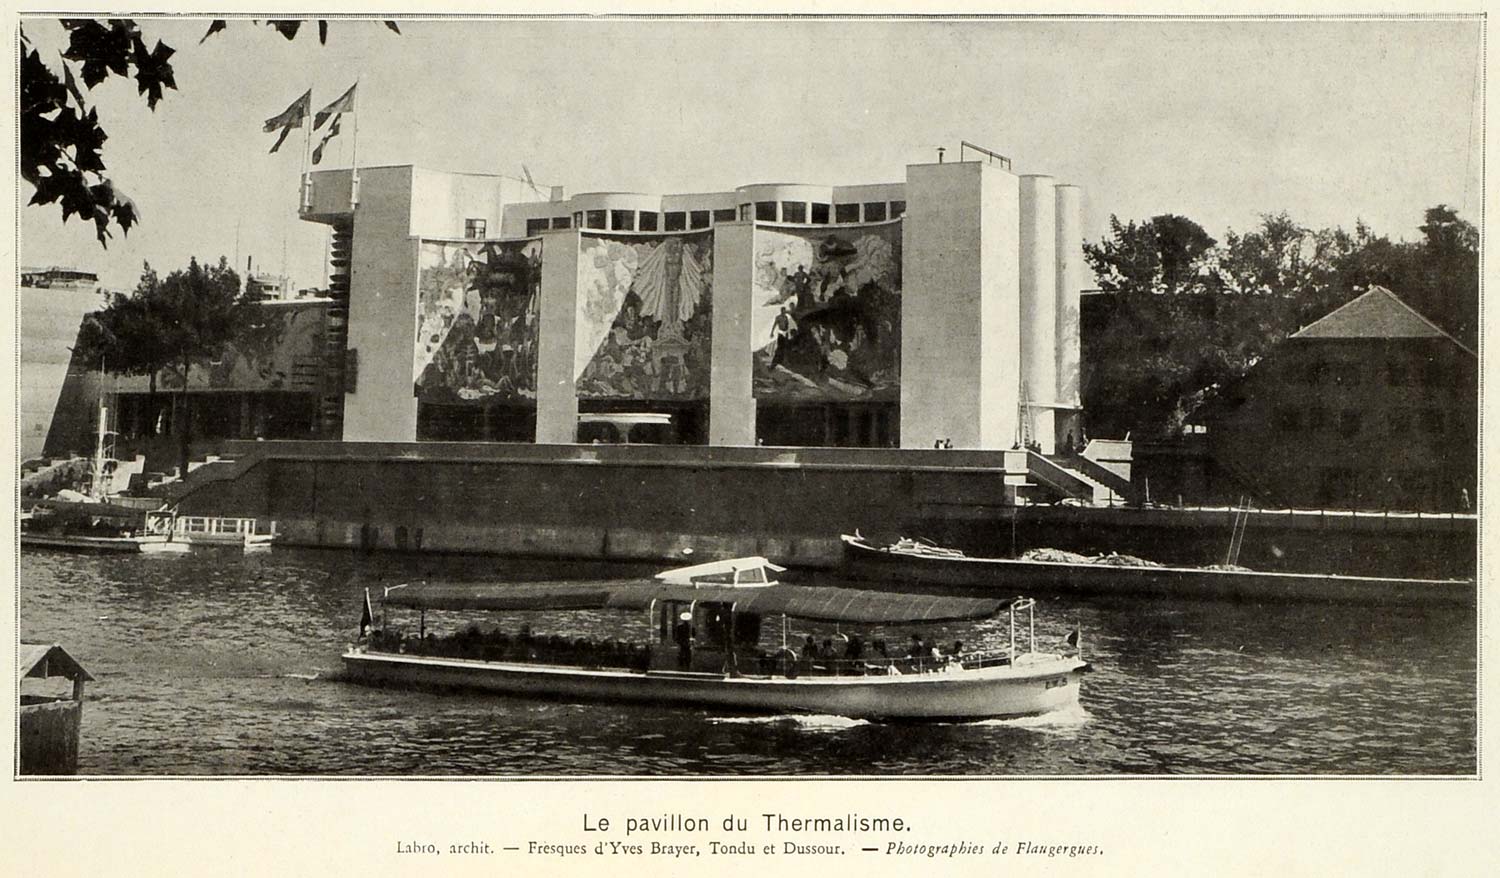 1937 Print Paris Exposition Pavilion du Thermalisme Murals Tour Boat Seine ILL7